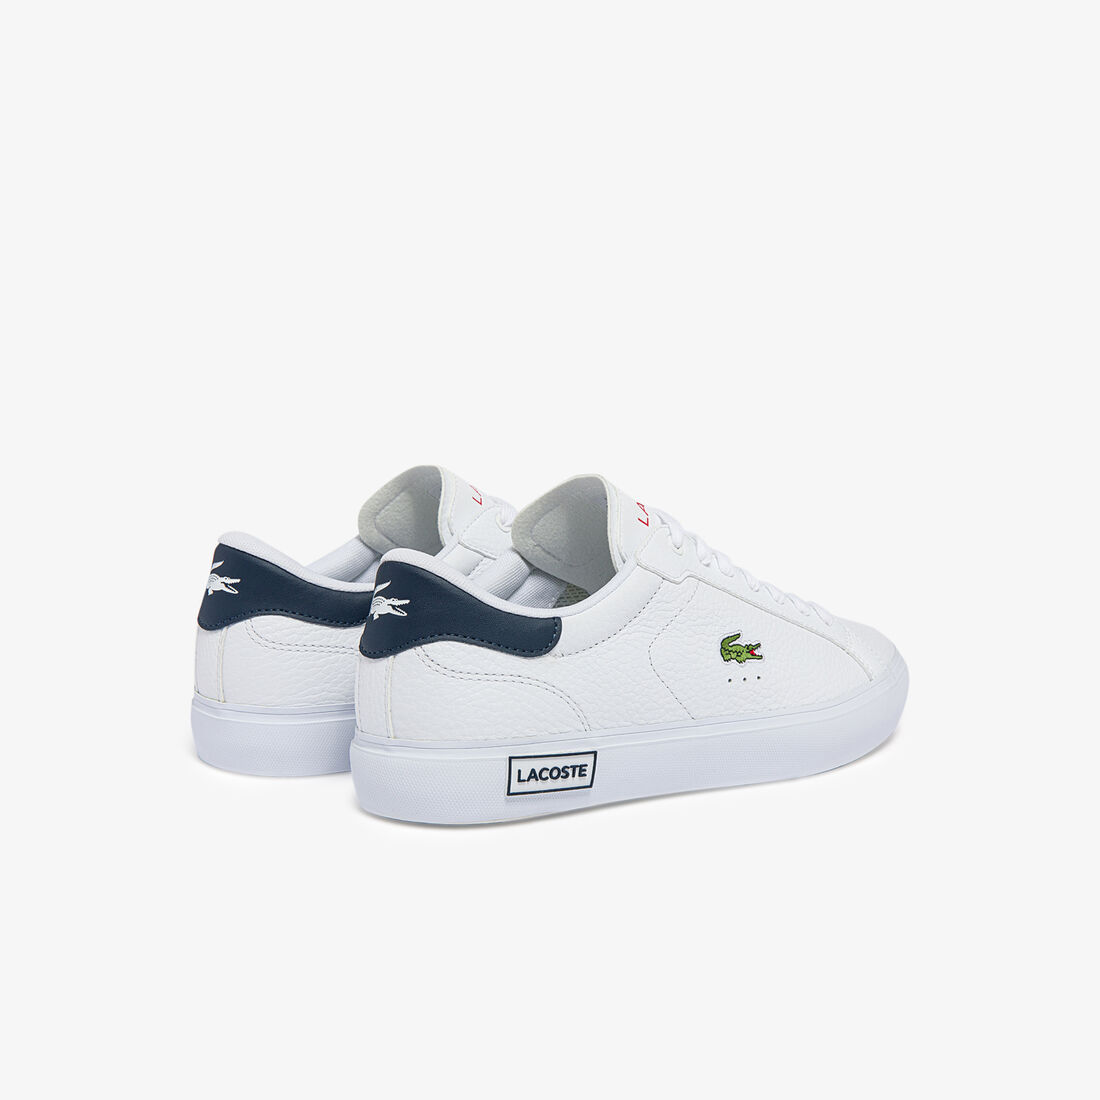 Lacoste Powercourt Leder Sneakers Herren Weiß Navy Rot | VKJG-76831